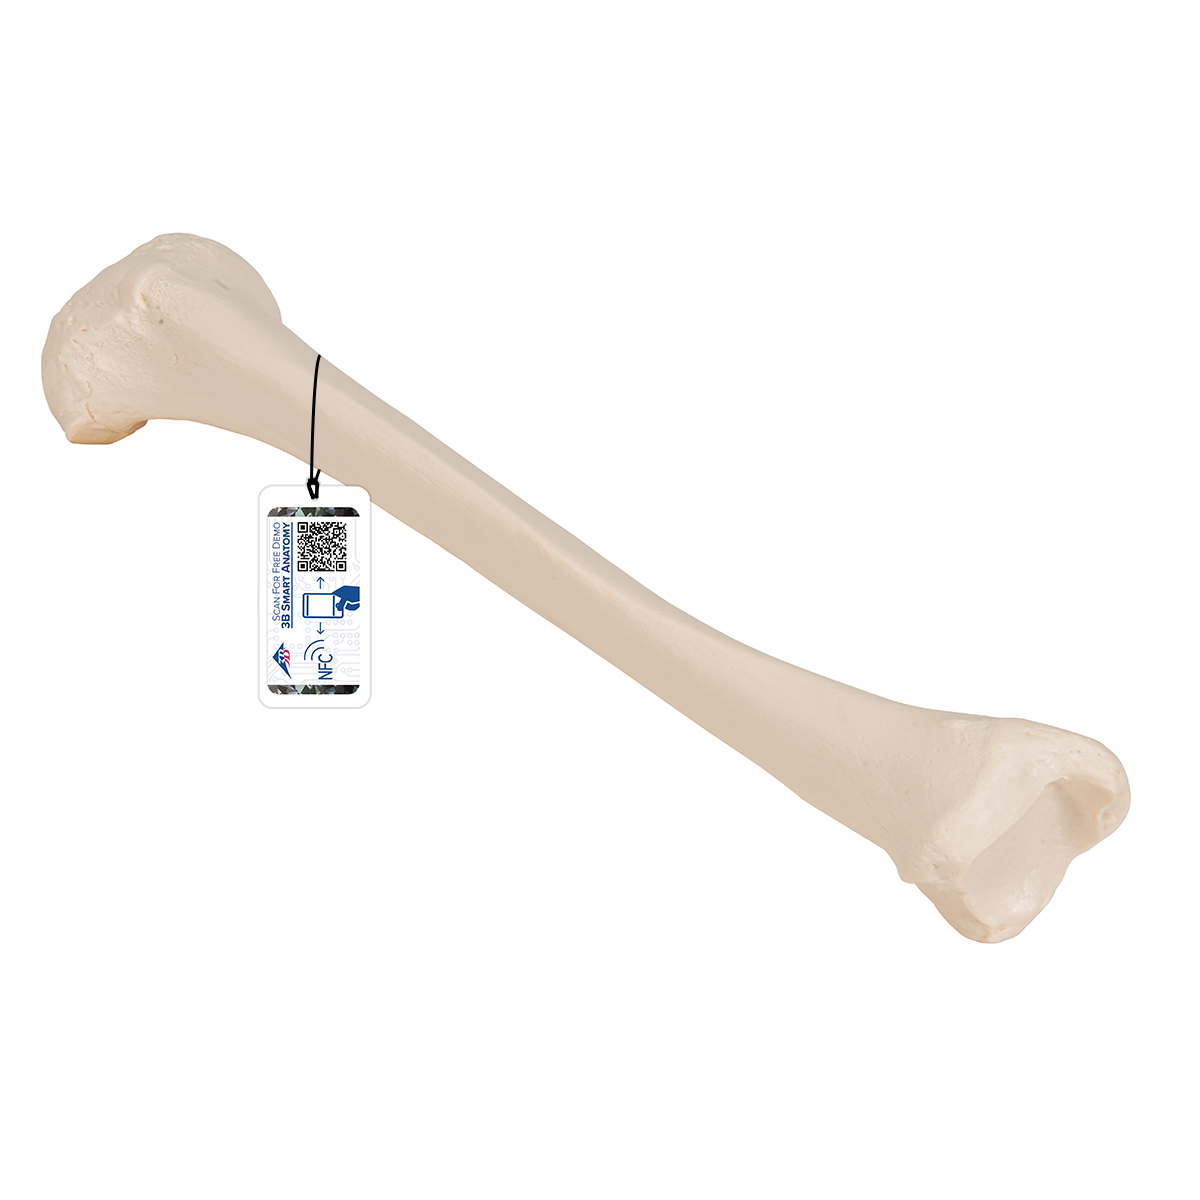 Schienbein Knochen Modell - 3B Smart Anatomy, Bestellnummer 1019363, A35/3, 3B Scientific